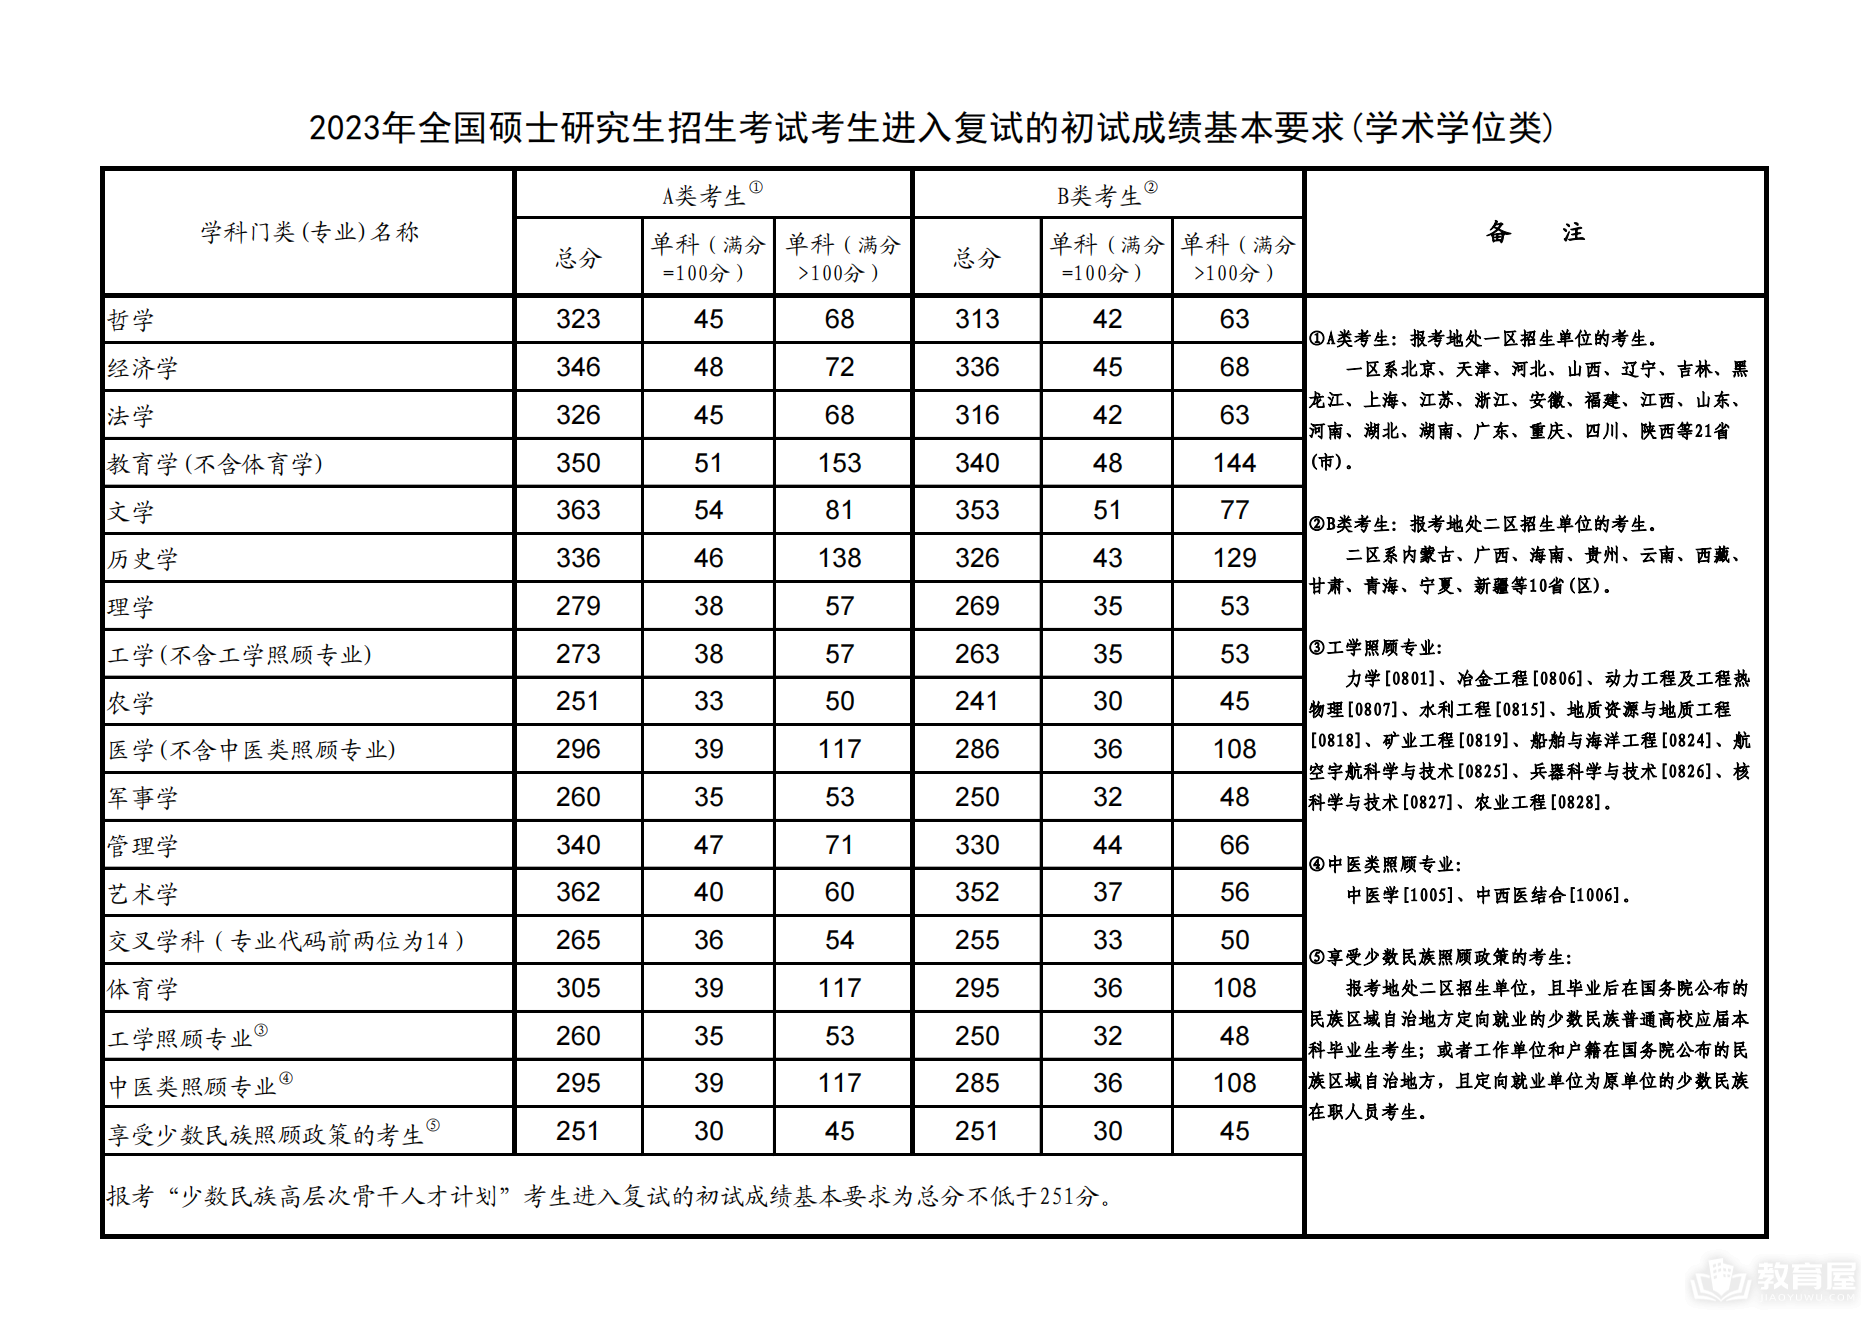 中央民族大学2023年研究生分数线